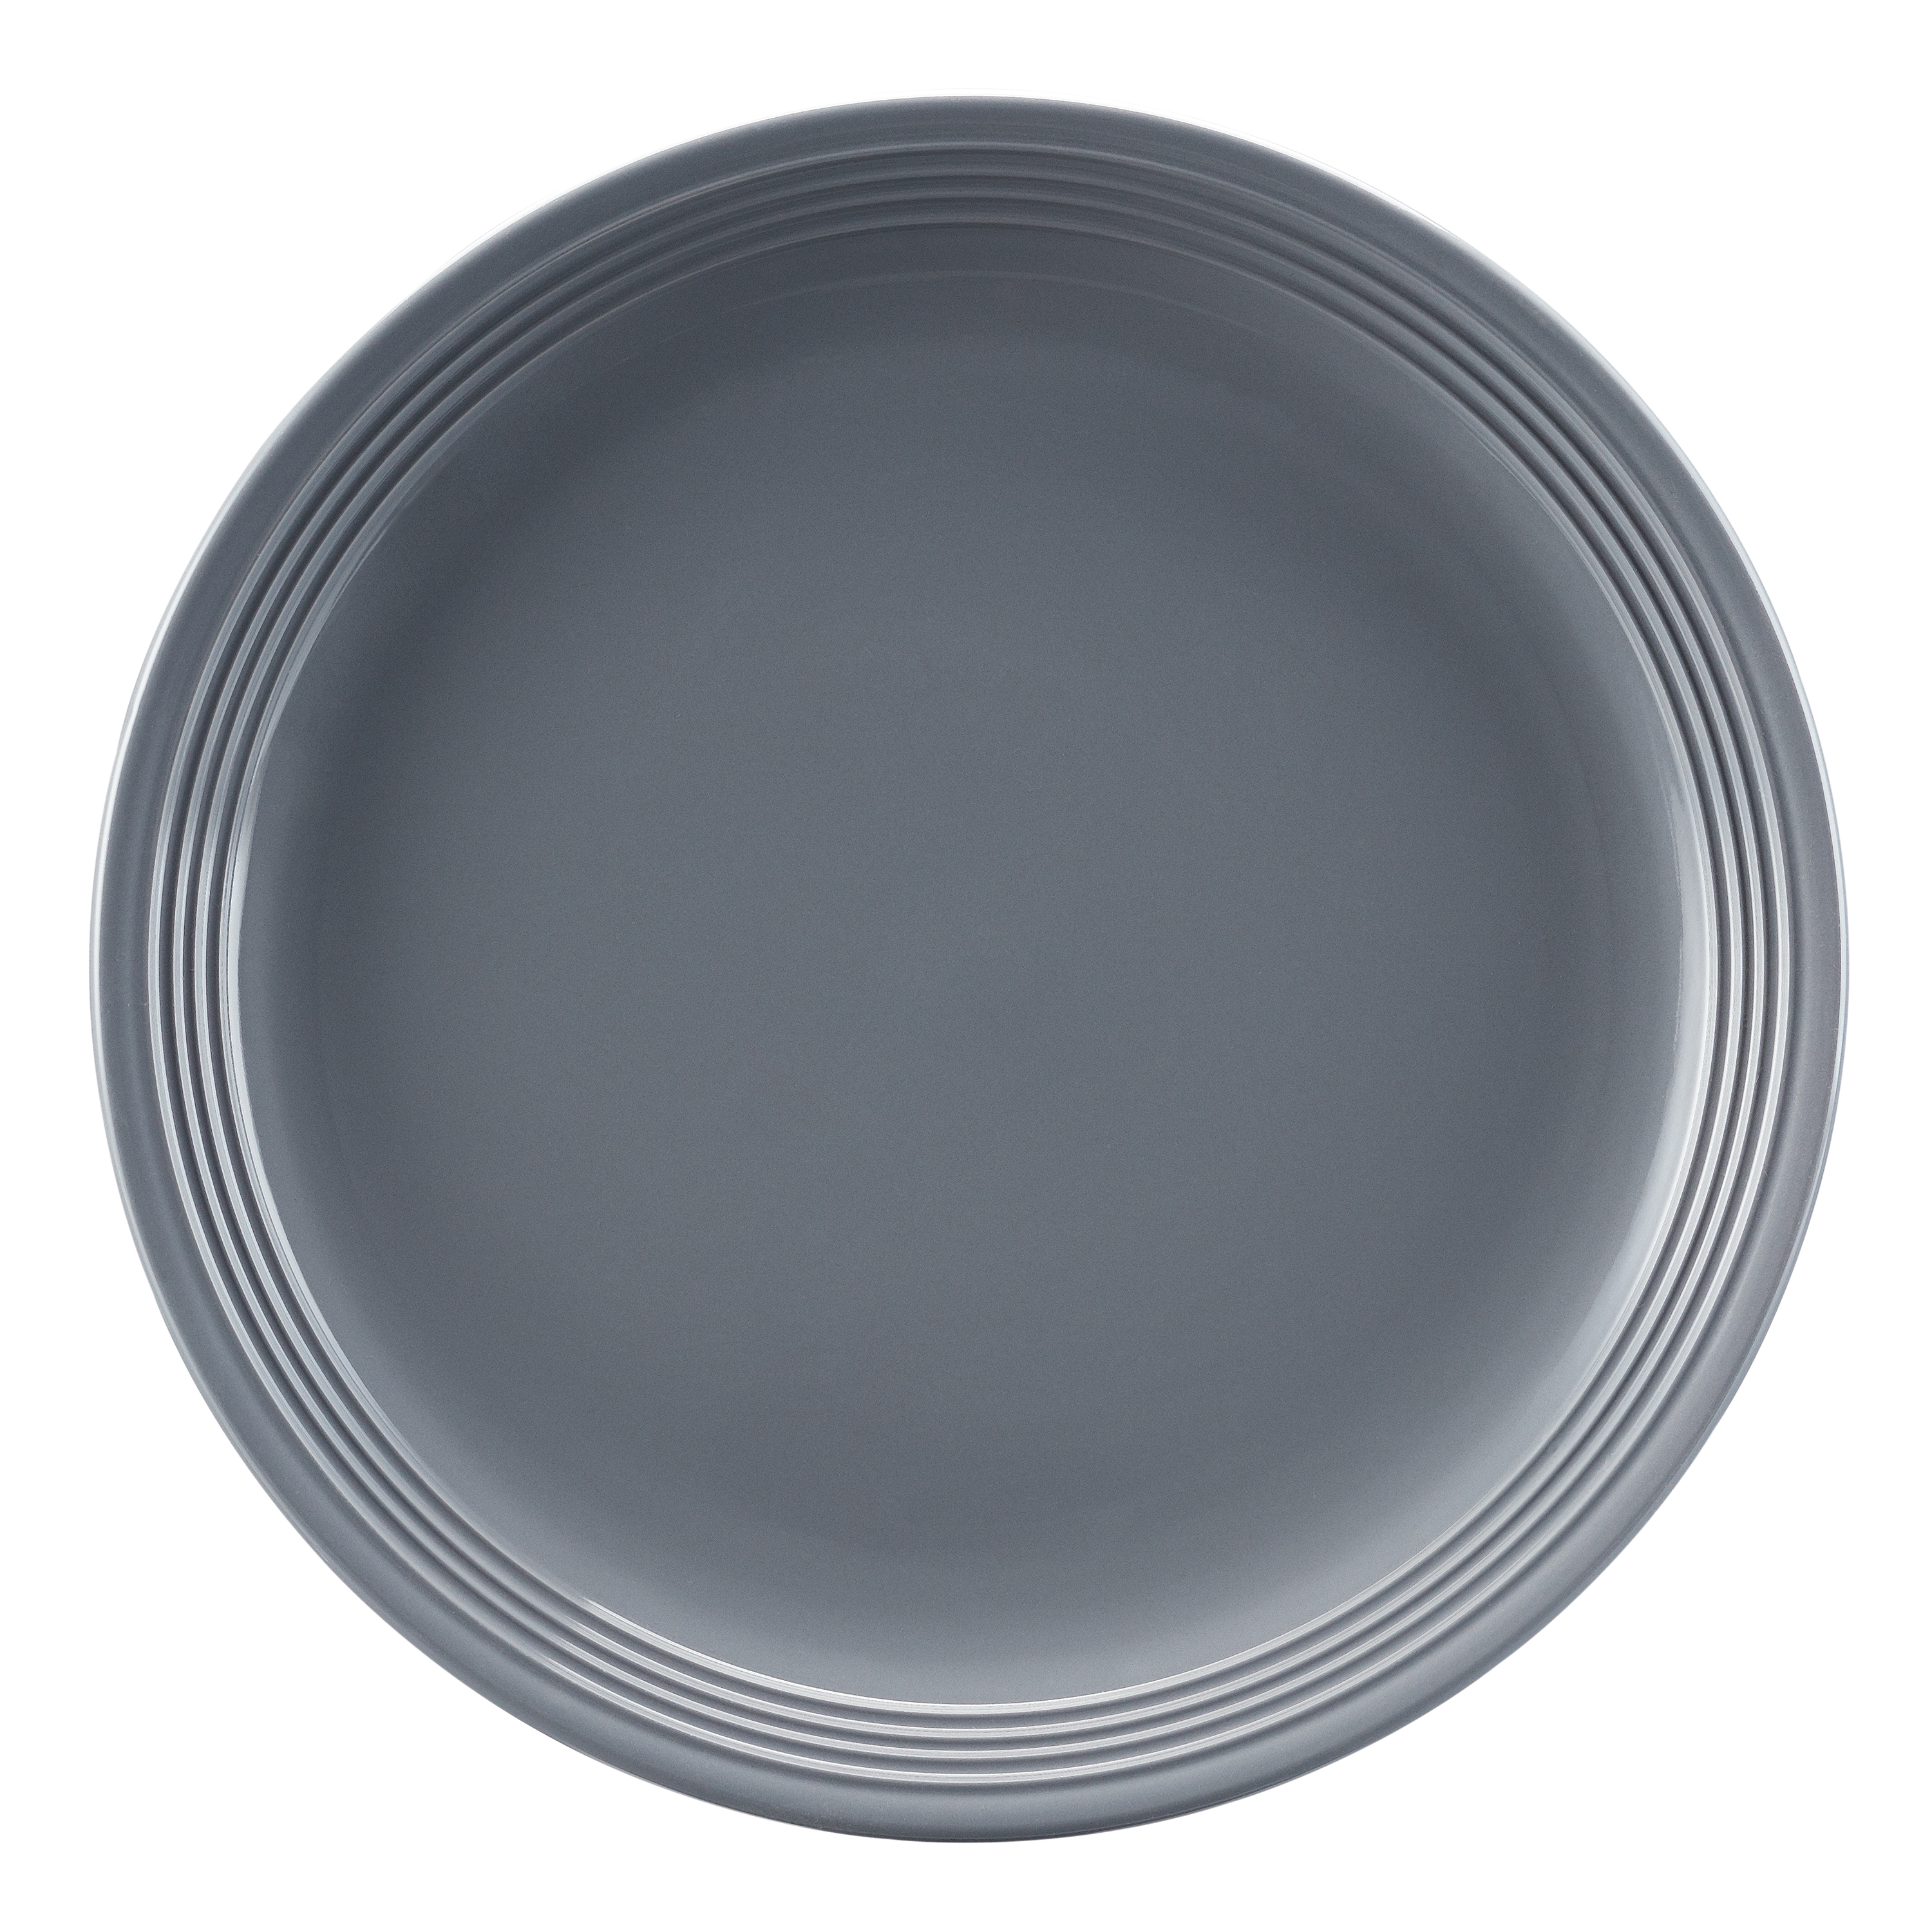 Mainstays Chiara 16-Piece Stoneware Gray Dinnerware Set - image 4 of 9